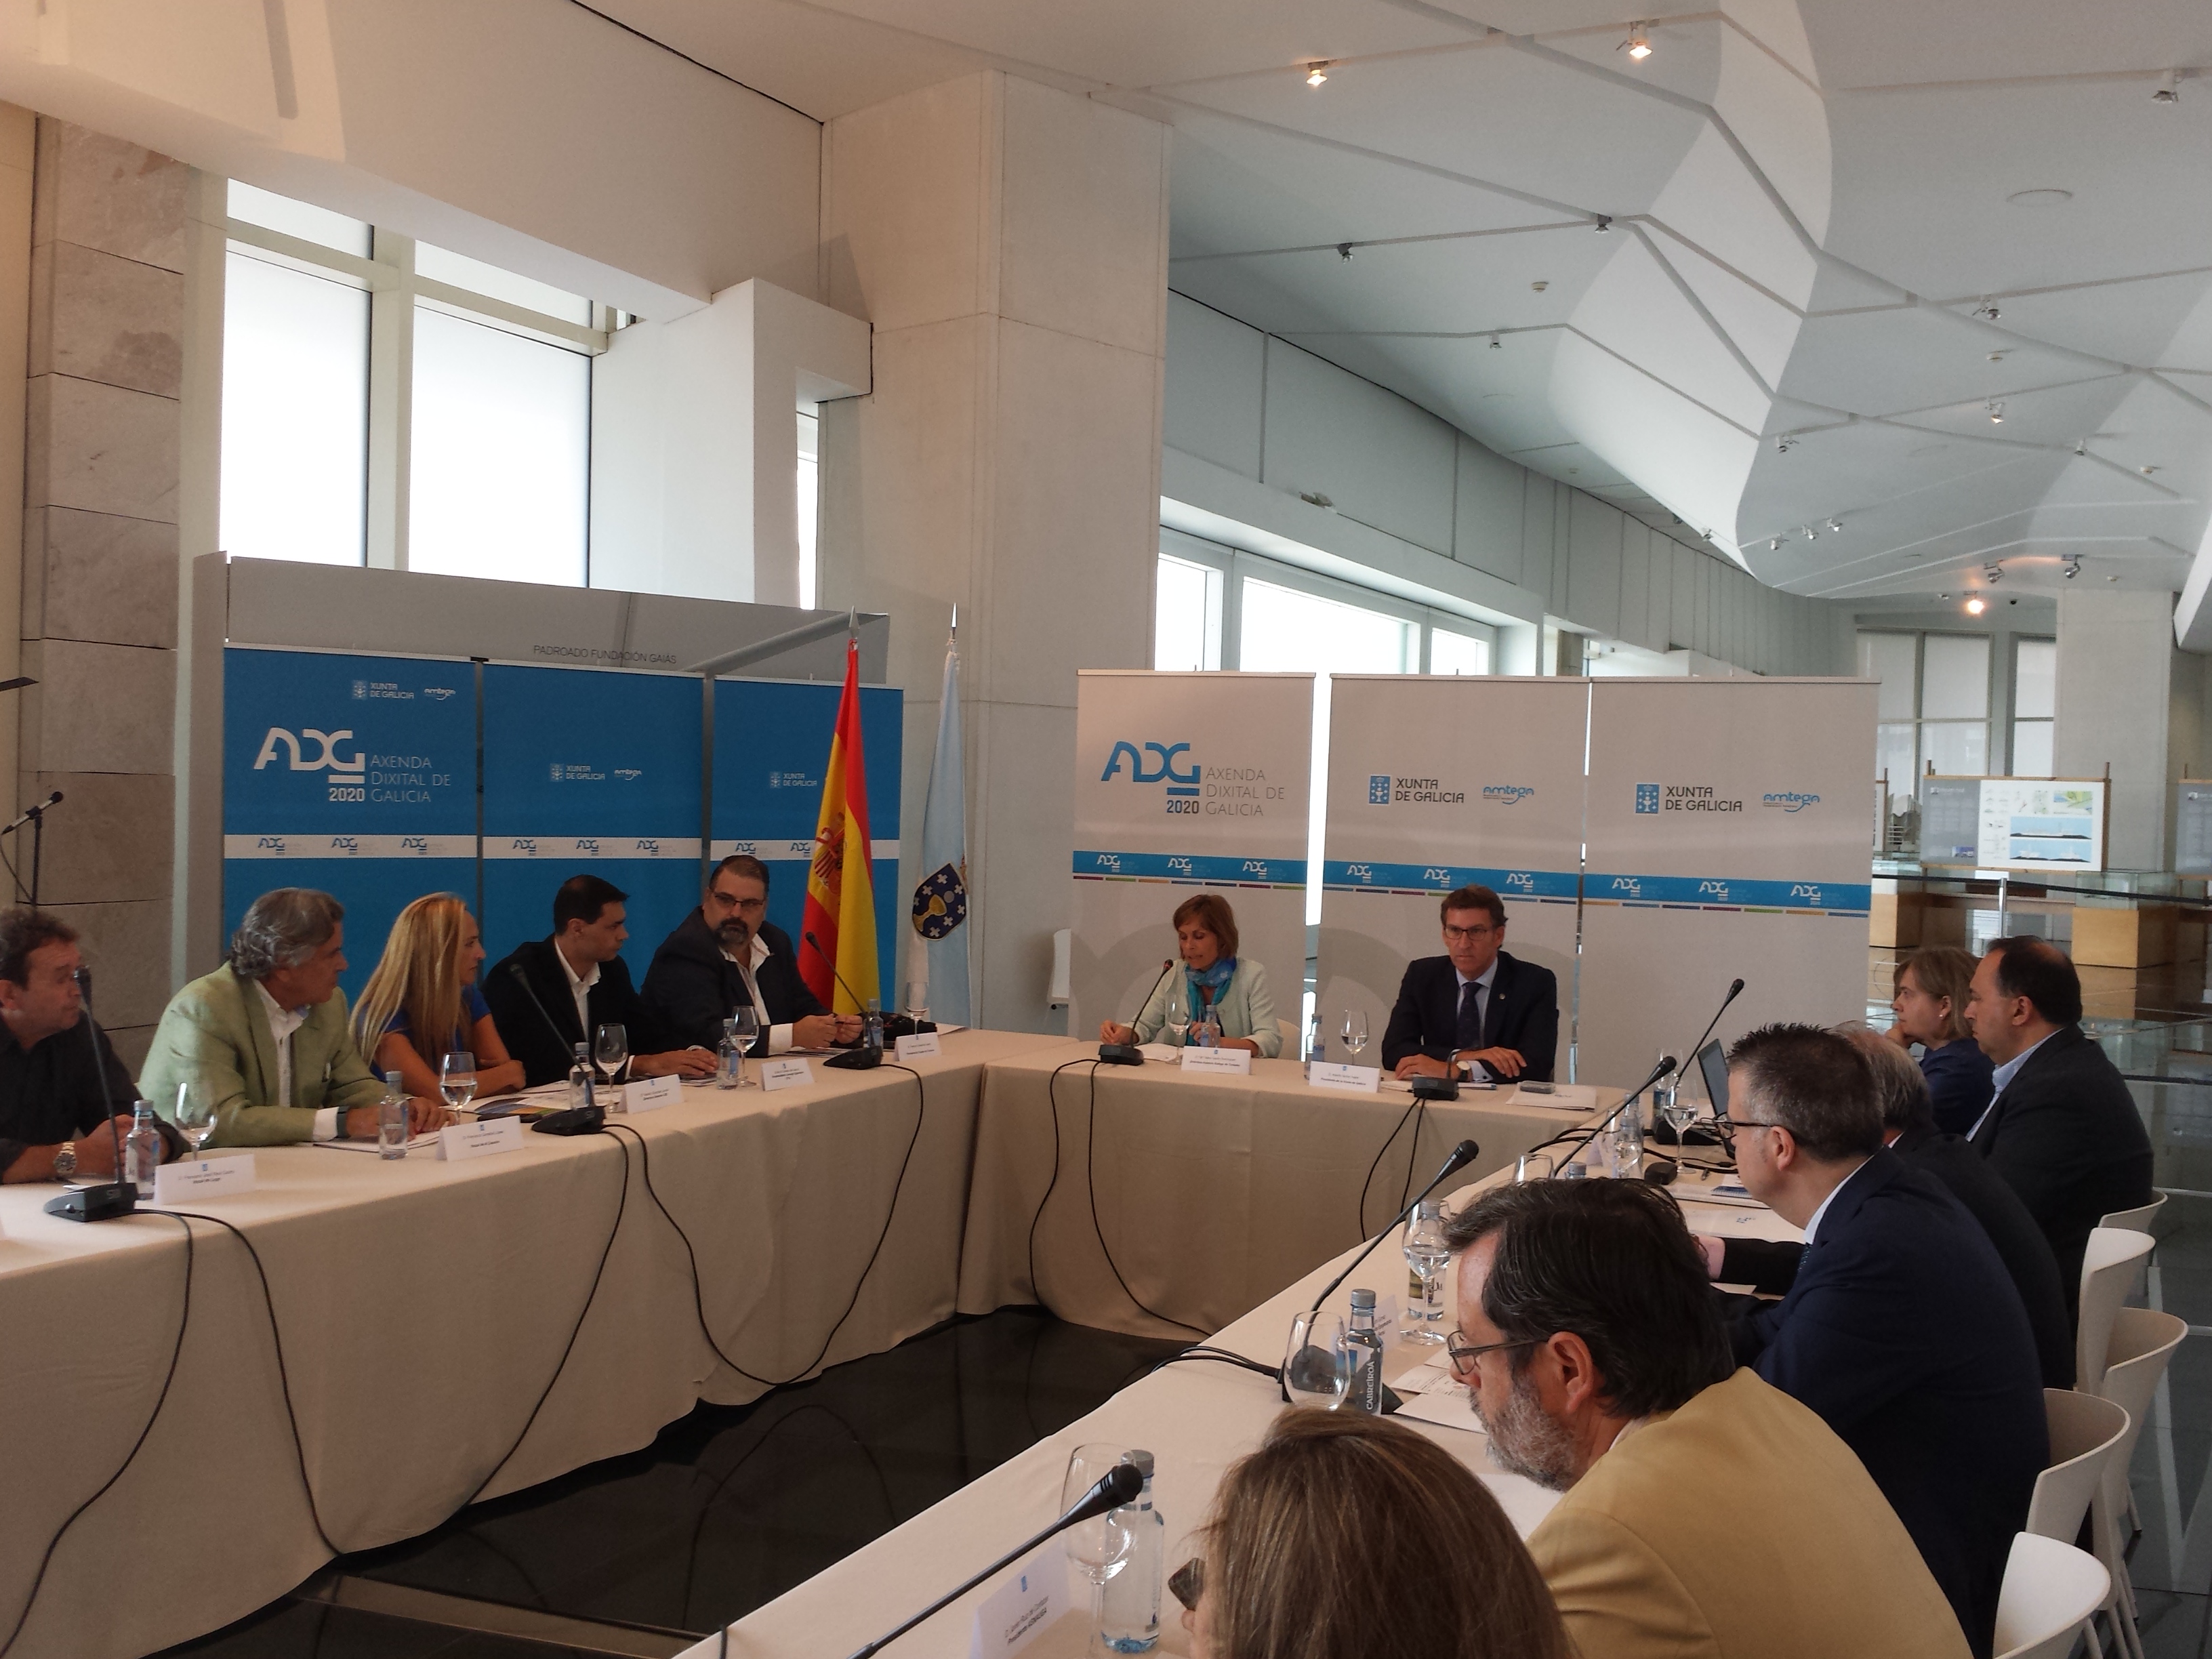 Núñez Feijóo presenta los avances y a hoja de ruta de implantación de la Axenda Dixital 2020 al sector turístico gallego